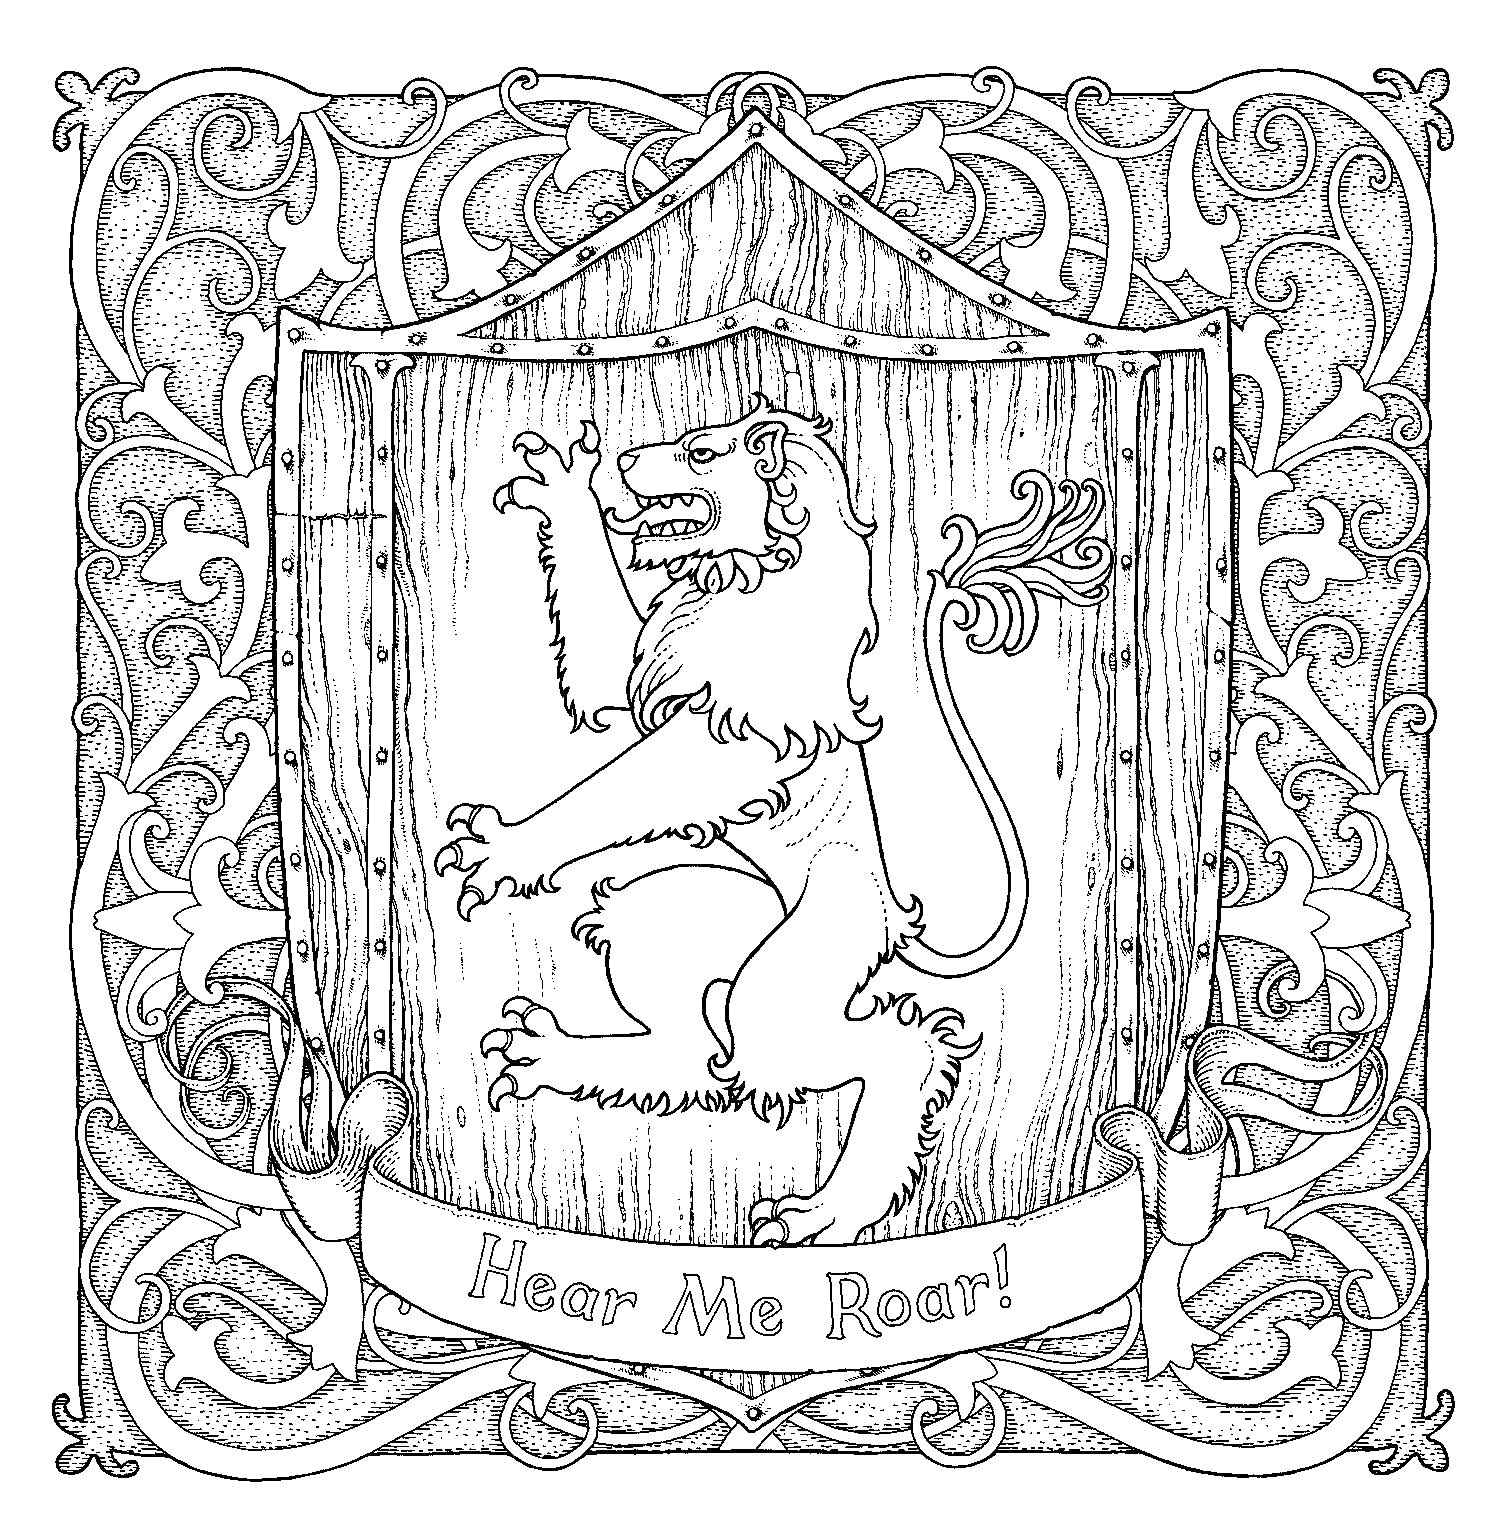 Раскраска Герб дома Ланнистеров - щит, держащийся на задних лапах лев, деревянный фон, декоративная рамка, лента с надписью 